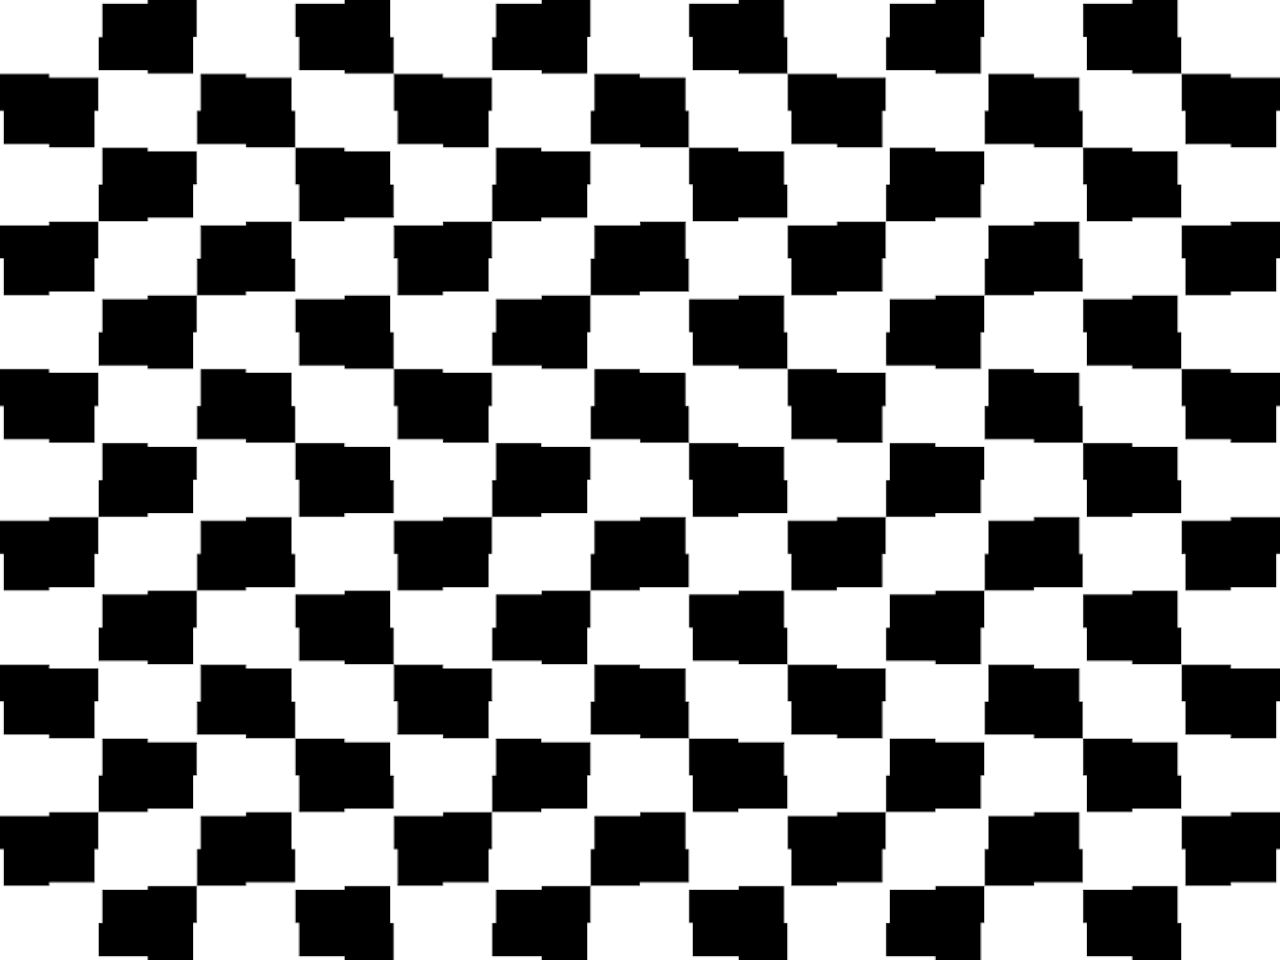 Een zwart-wit geruit patroon. De optische ilusie van een schaakbord is weergegeven.